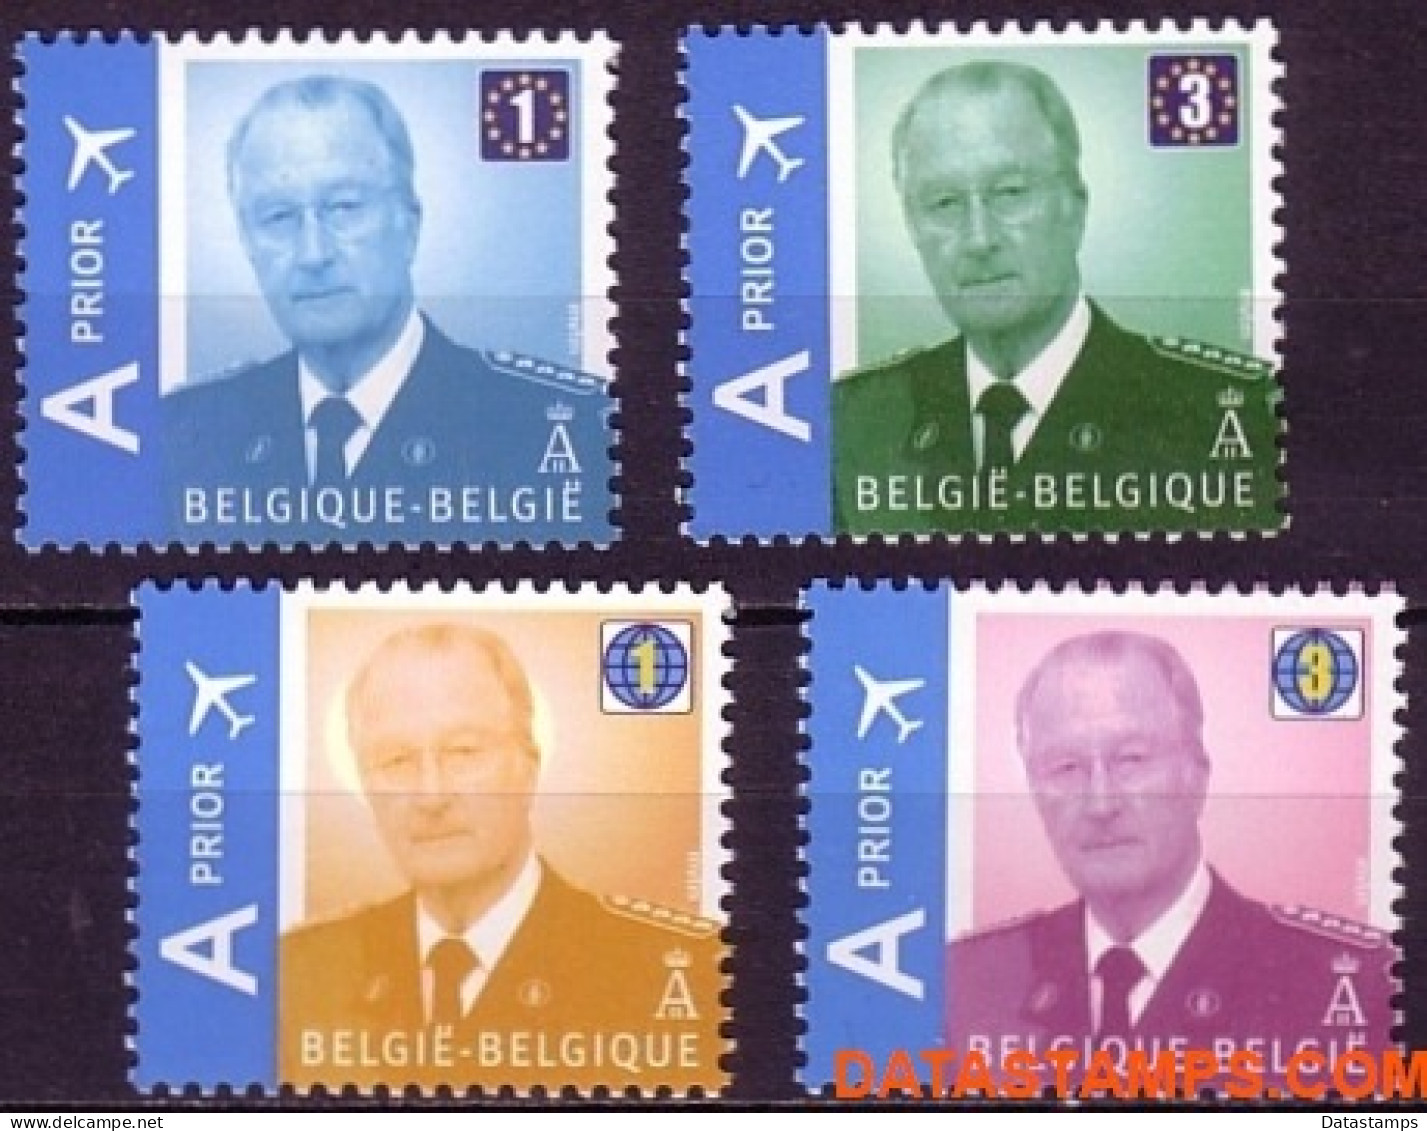 België 2009 - Mi:3913/3916, Yv:3848/3851, OBP:3867/3870, Stamp - XX - King Albert II Mvtm - Nieuw Frankeringssysteem - 1993-2013 King Albert II (MVTM)